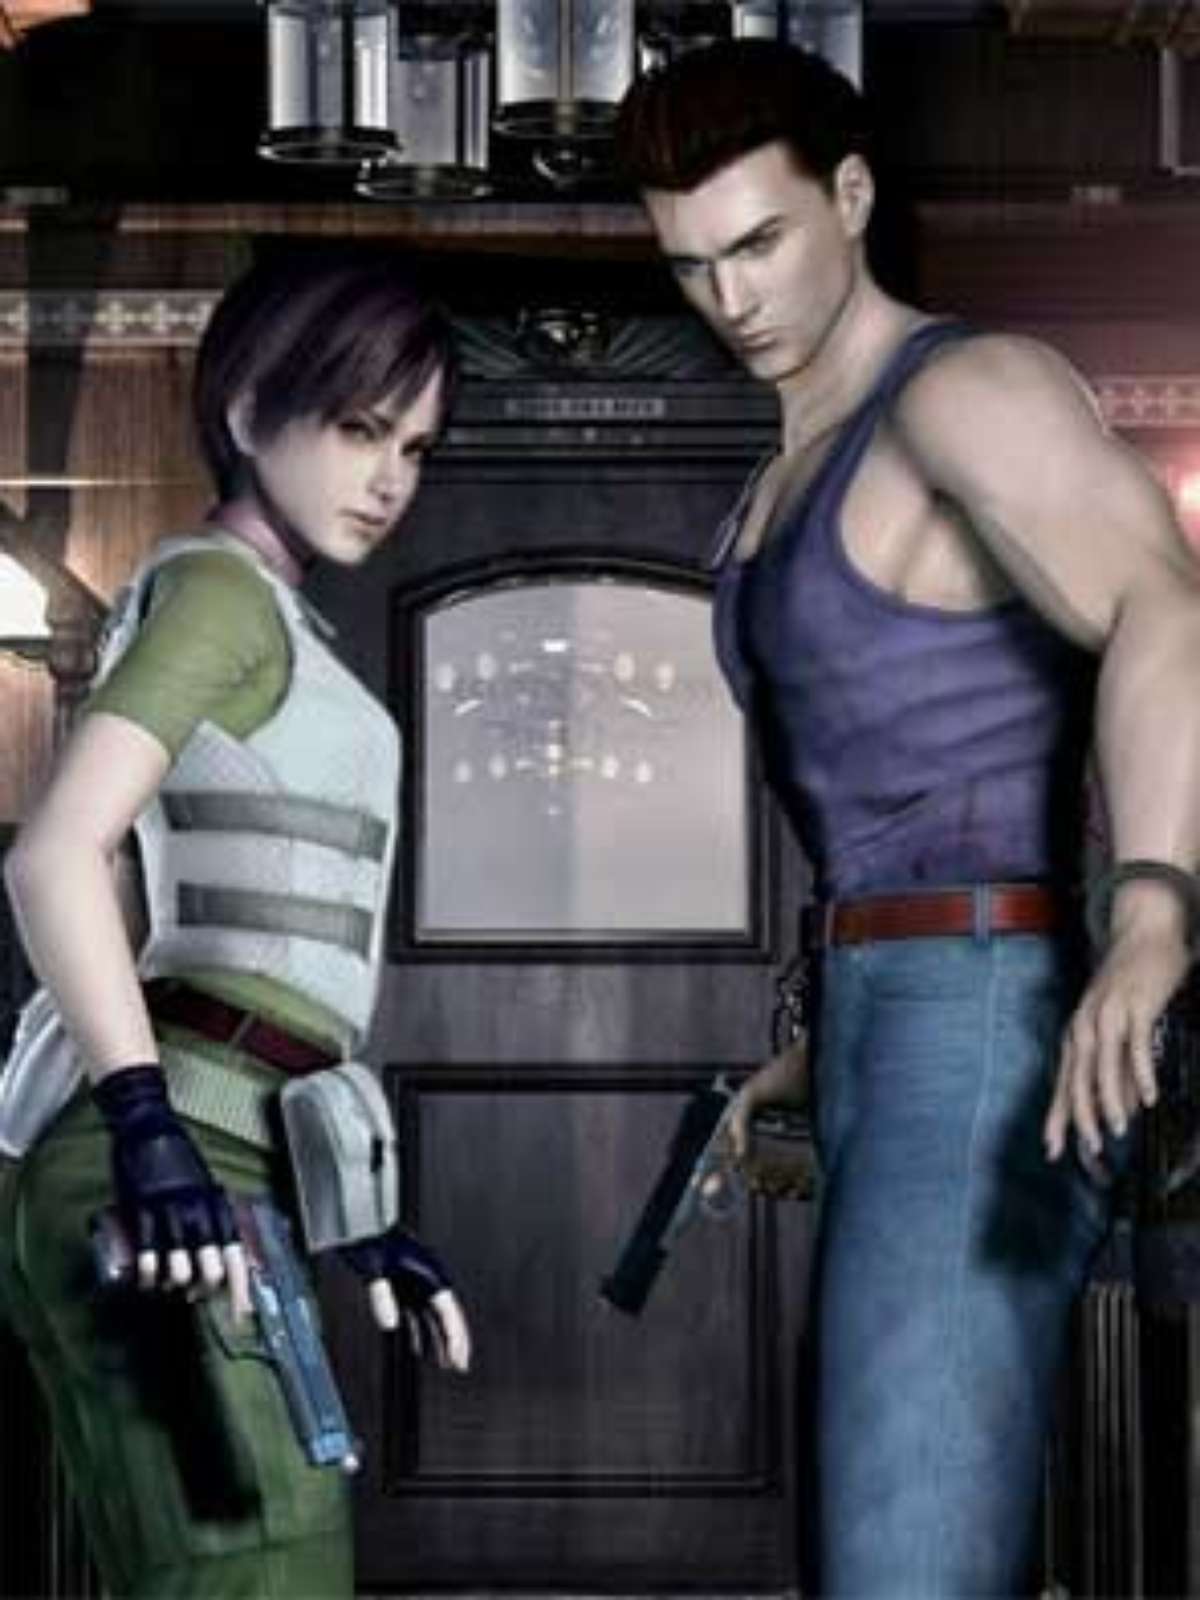 Um mapa da história dos jogos de Resident Evil